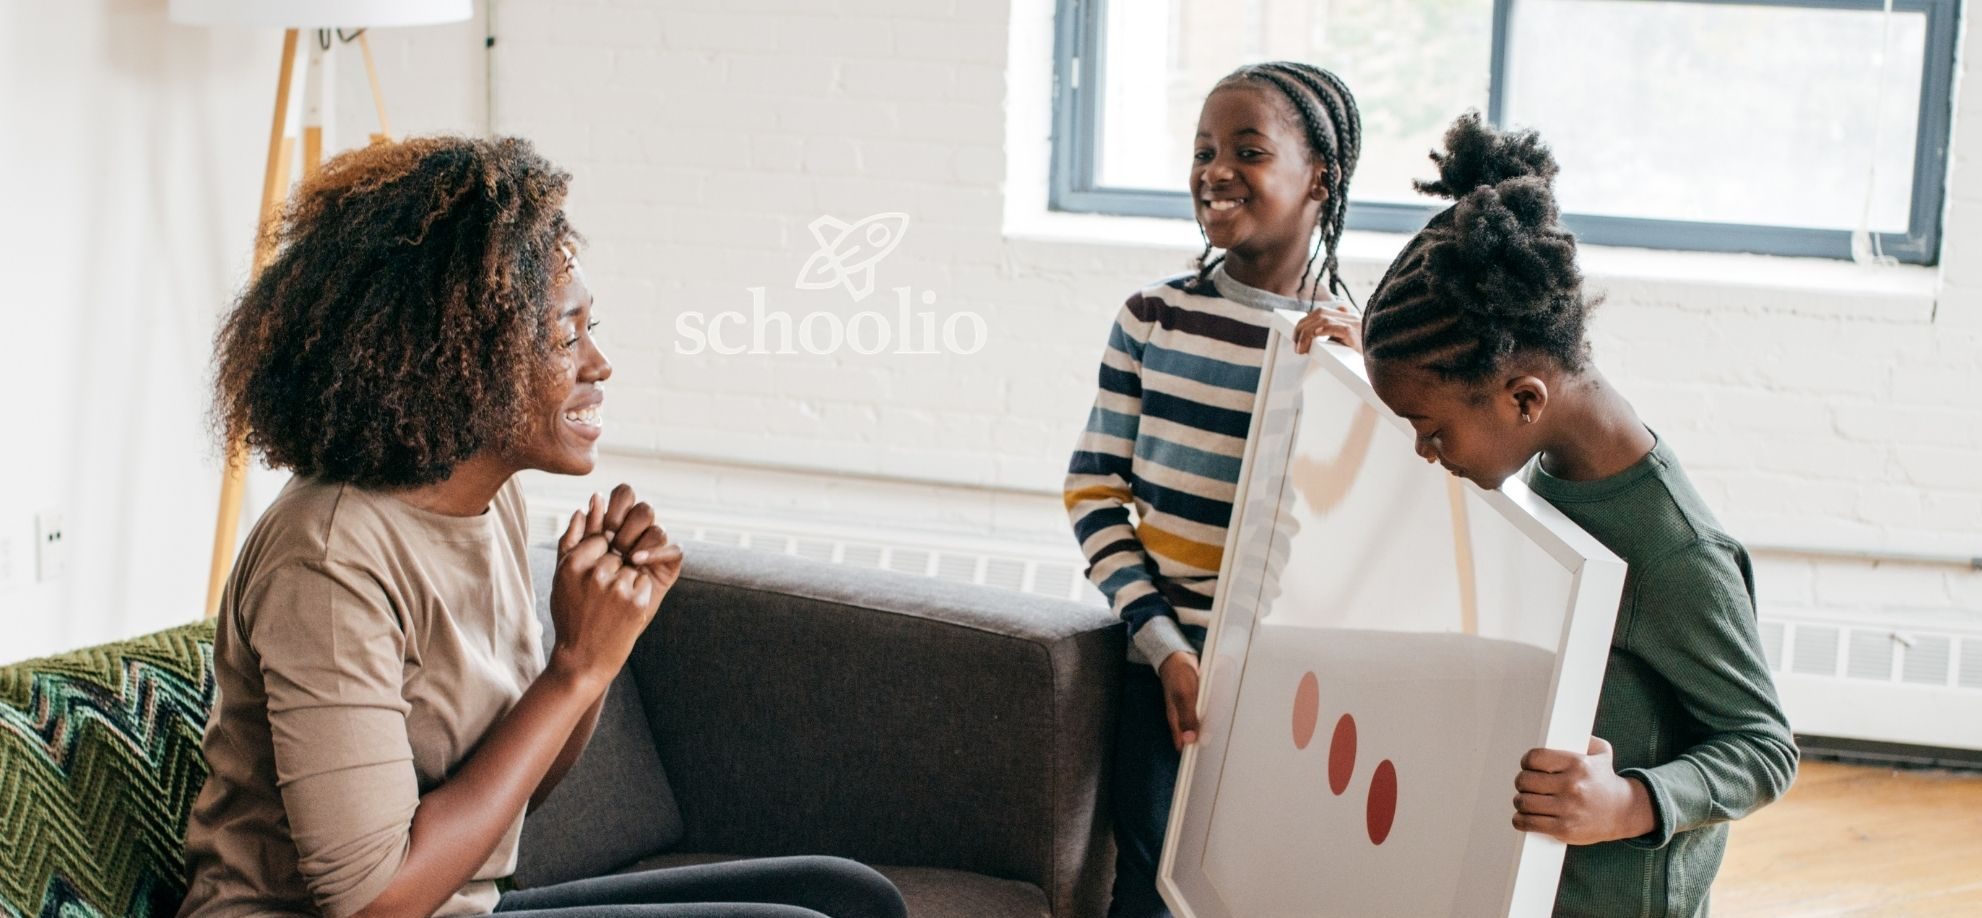 Schoolio homeschooling support for parents